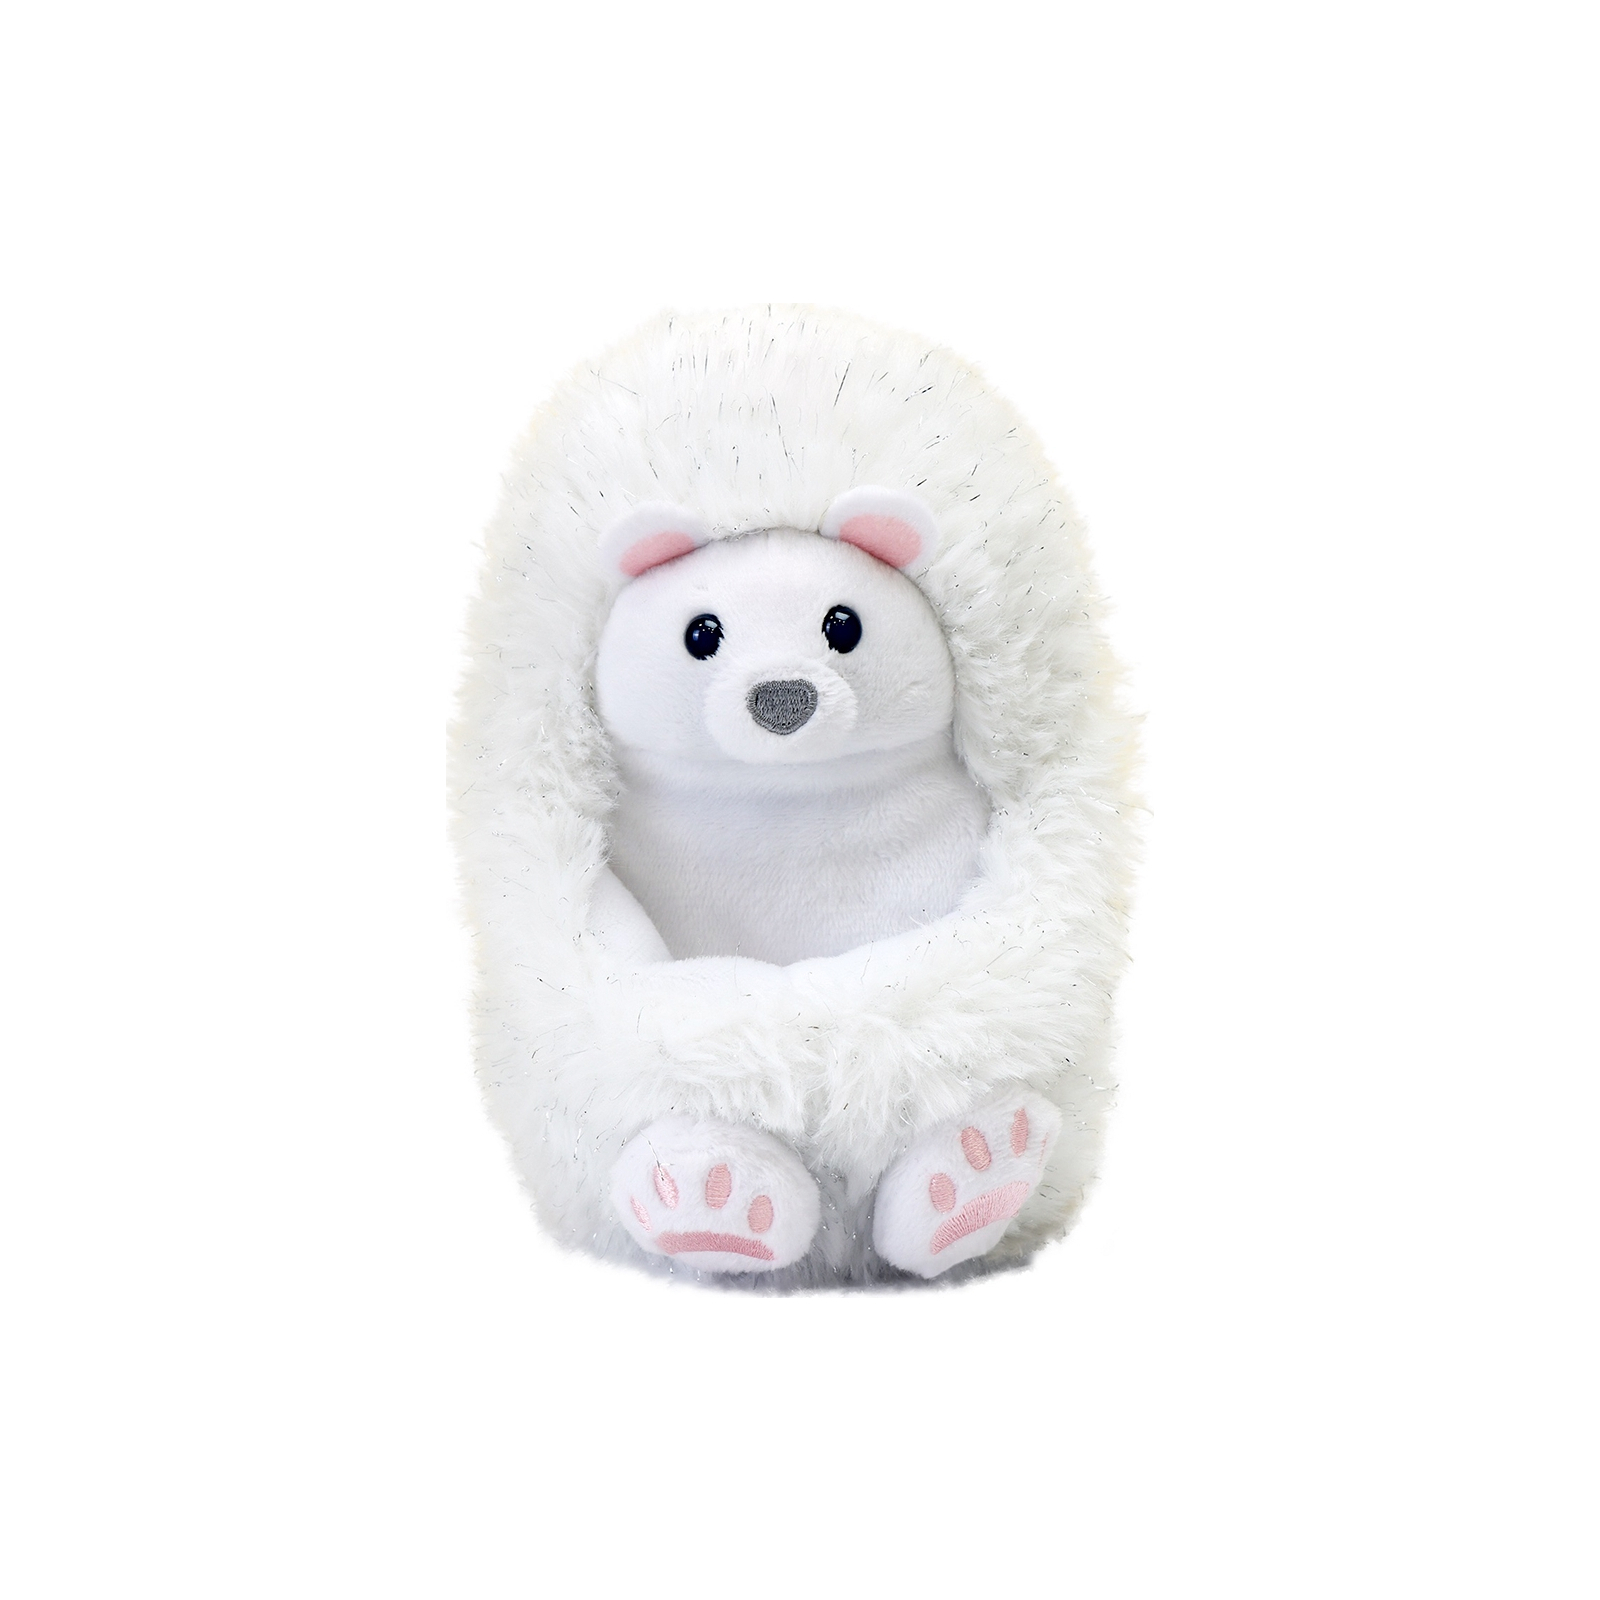 Інтерактивна іграшка Curlimals серії Arctic Glow - Полярний ведмедик Перрі (3725)